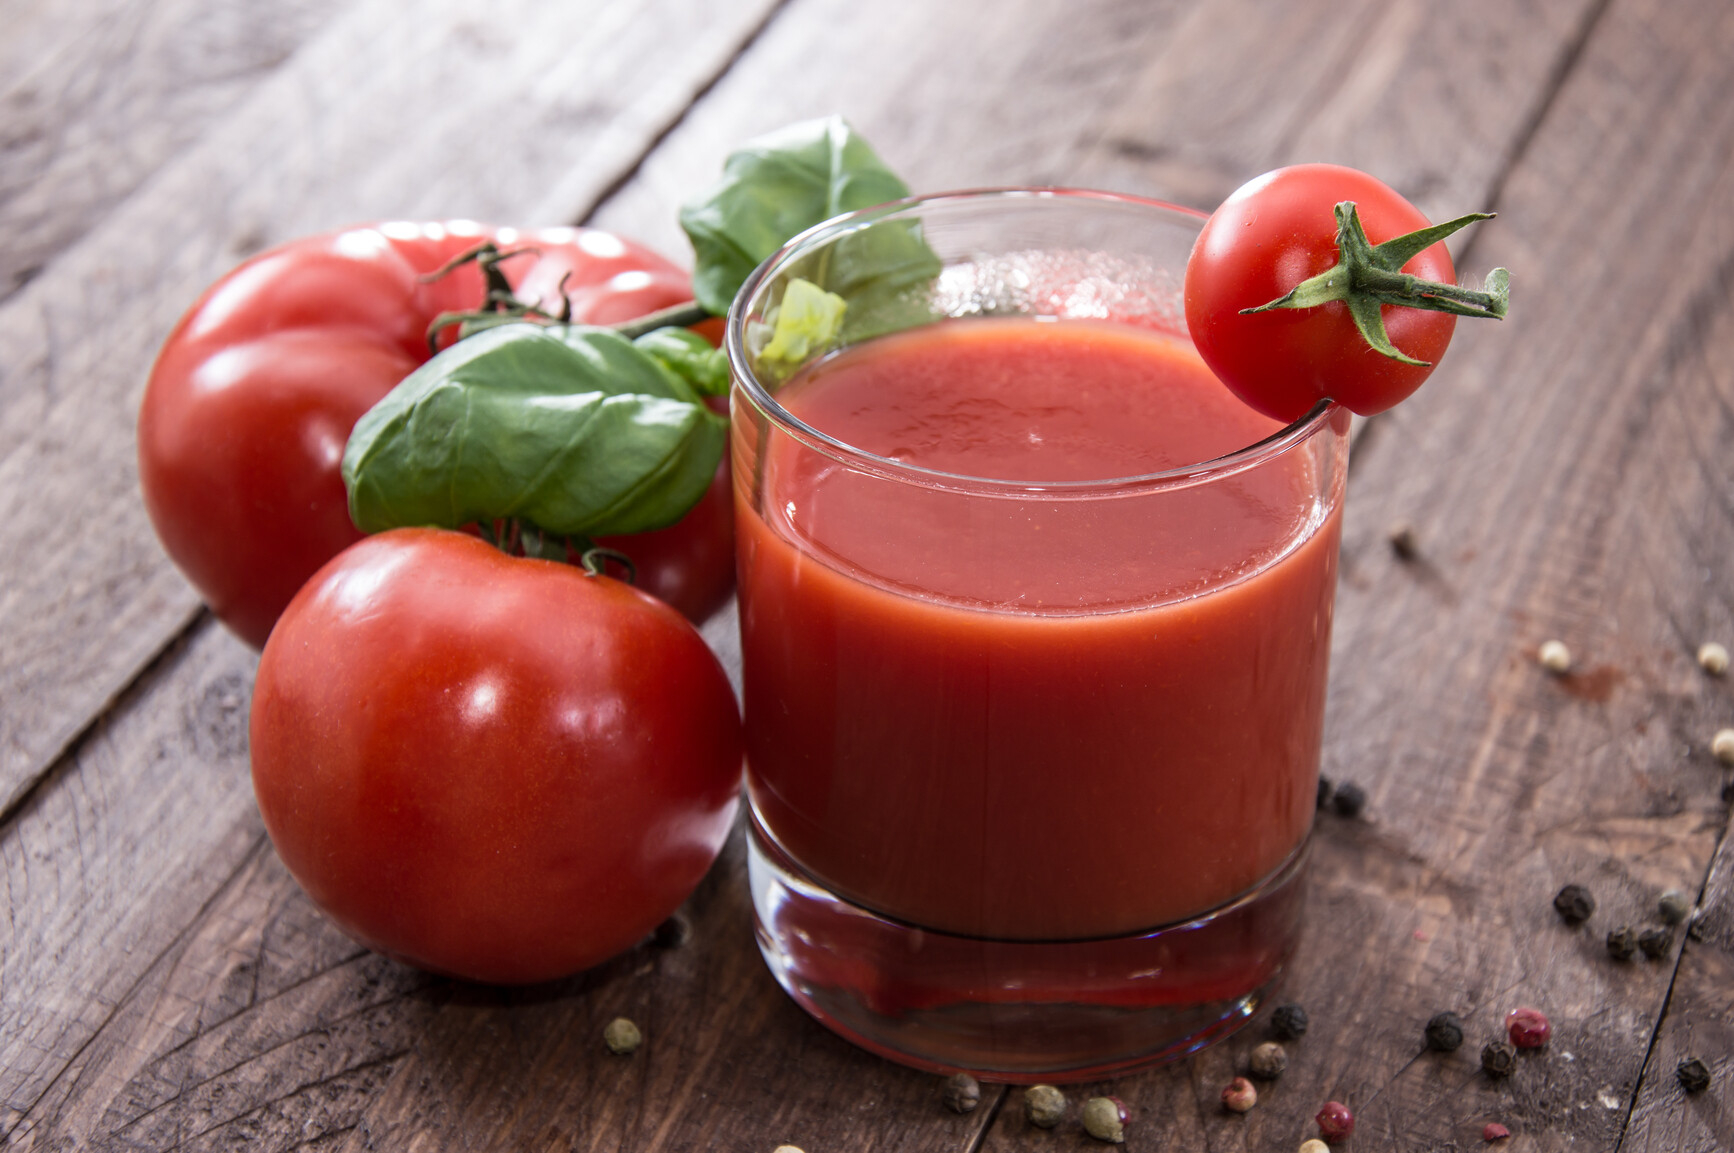 Рецепт приготовления томатного сока на зиму из помидор в домашних условиях через соковыжималку